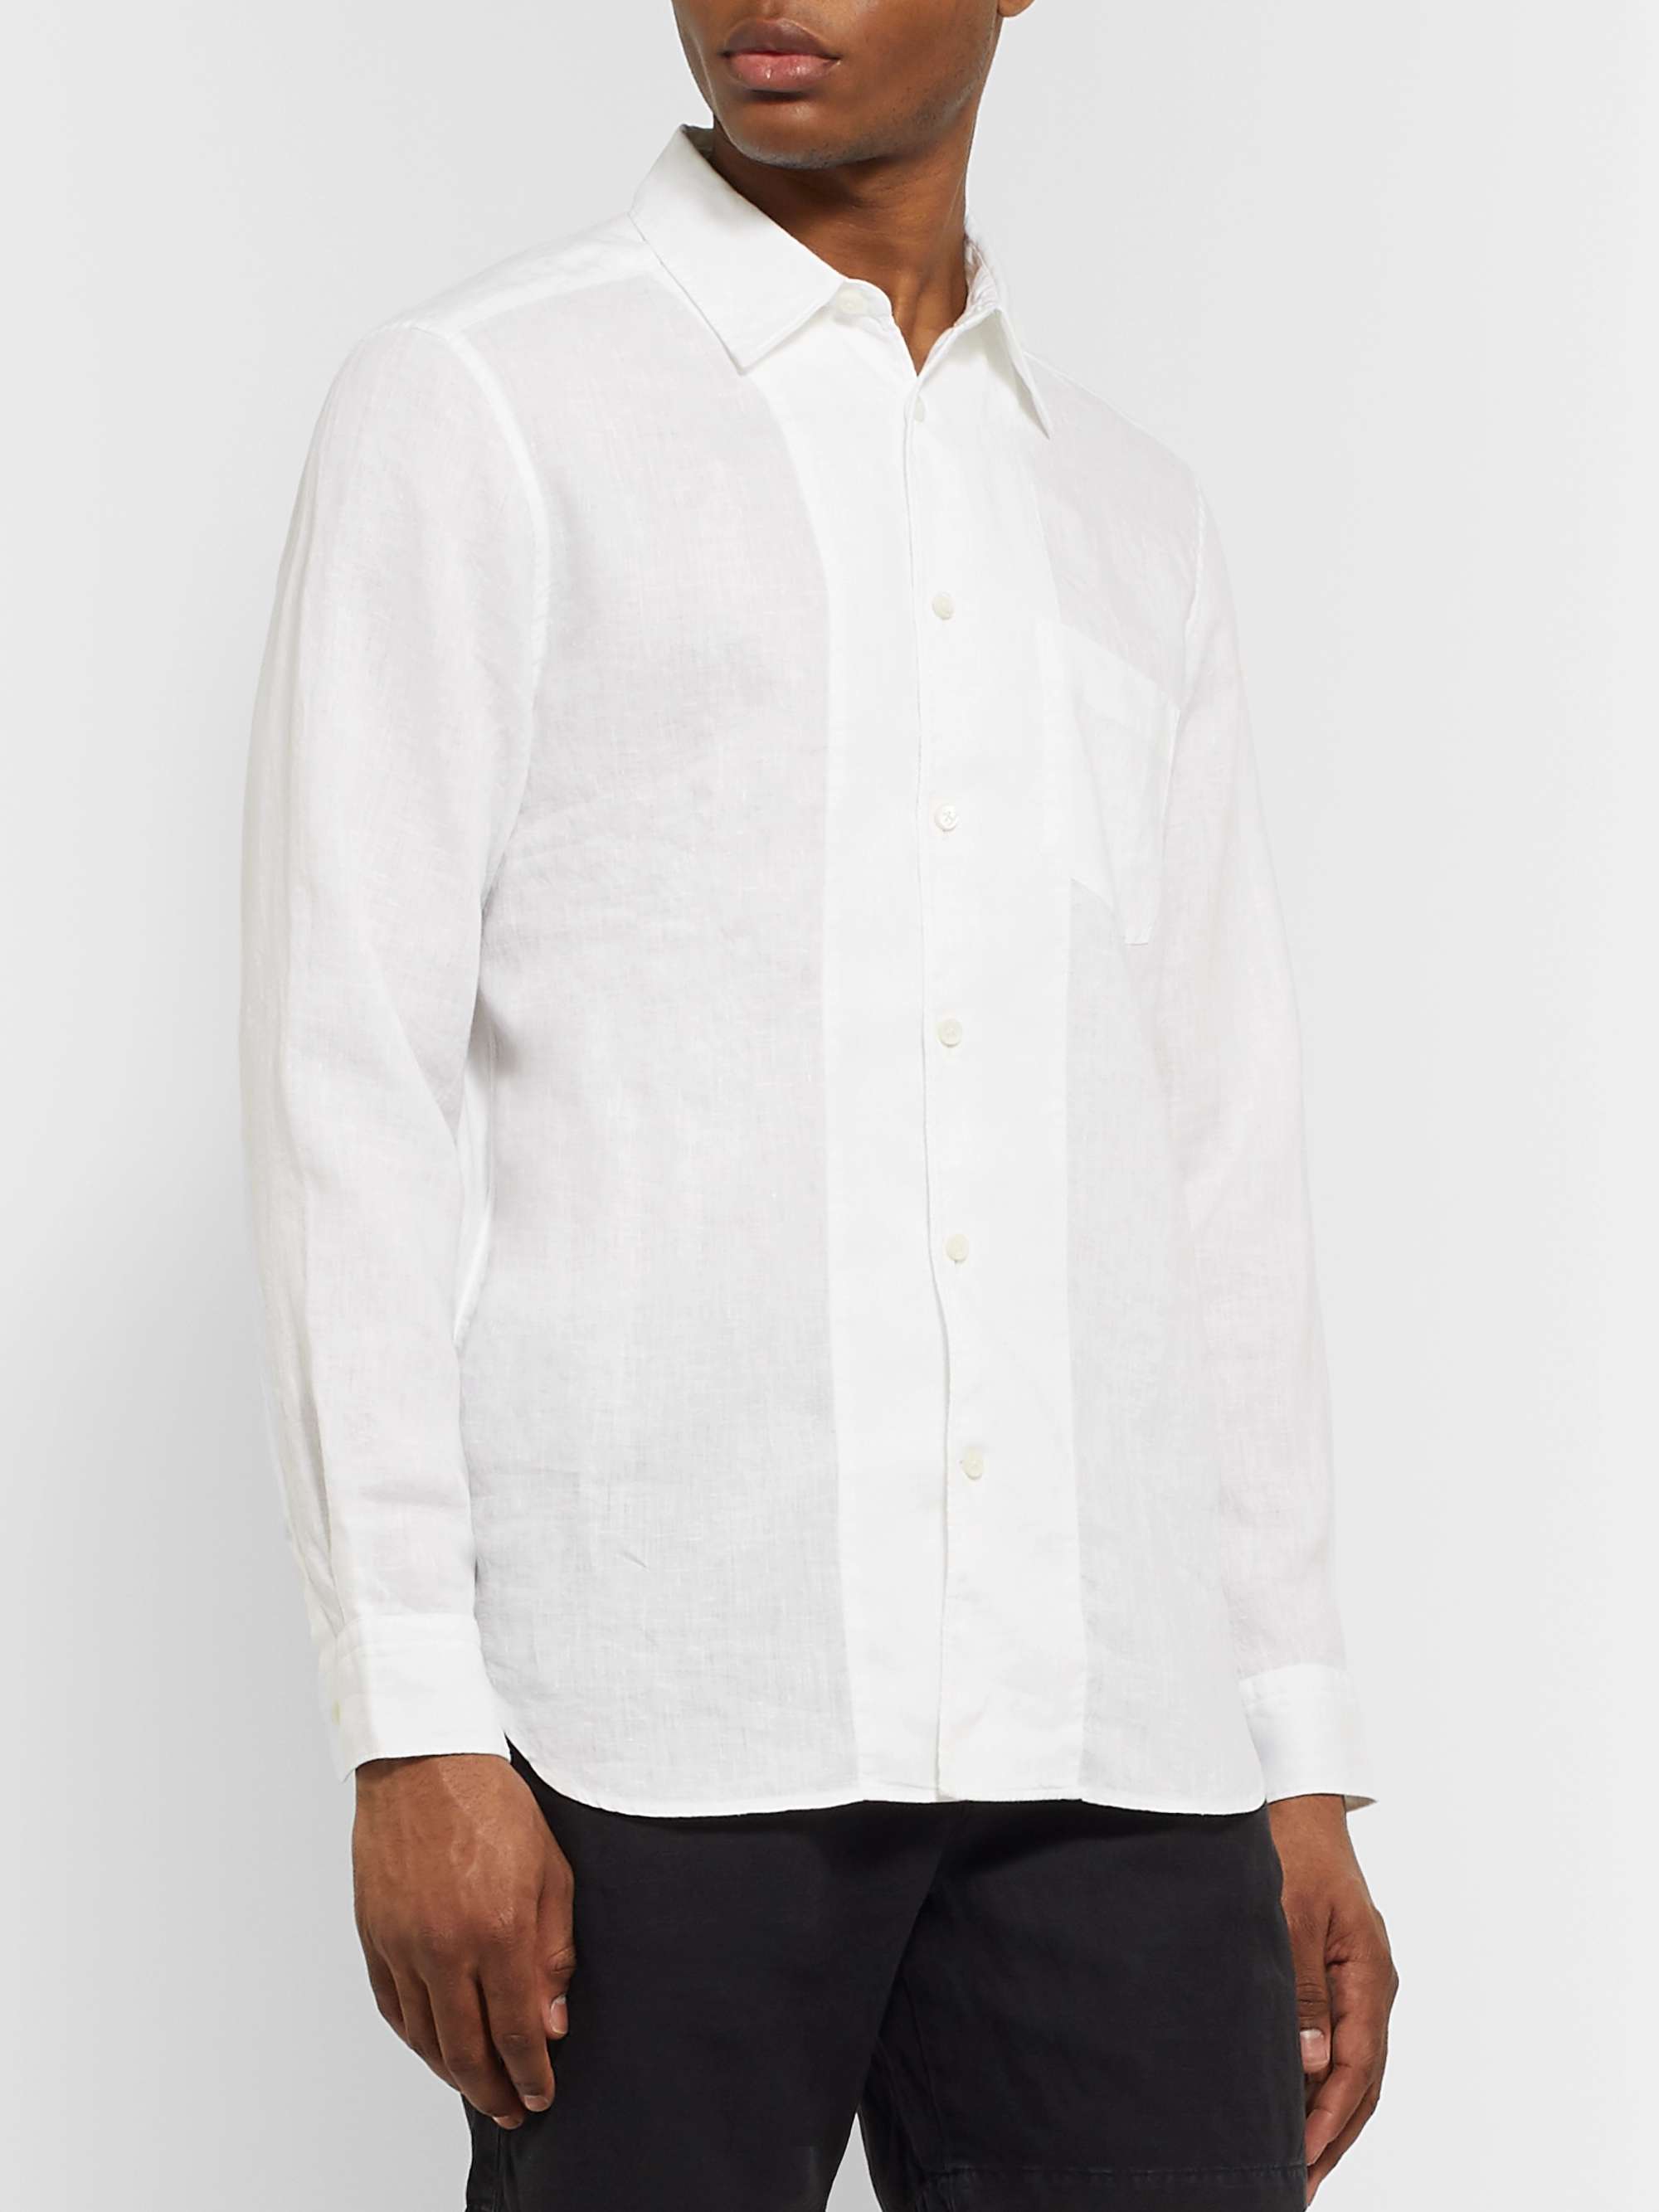 MR P. Linen Shirt